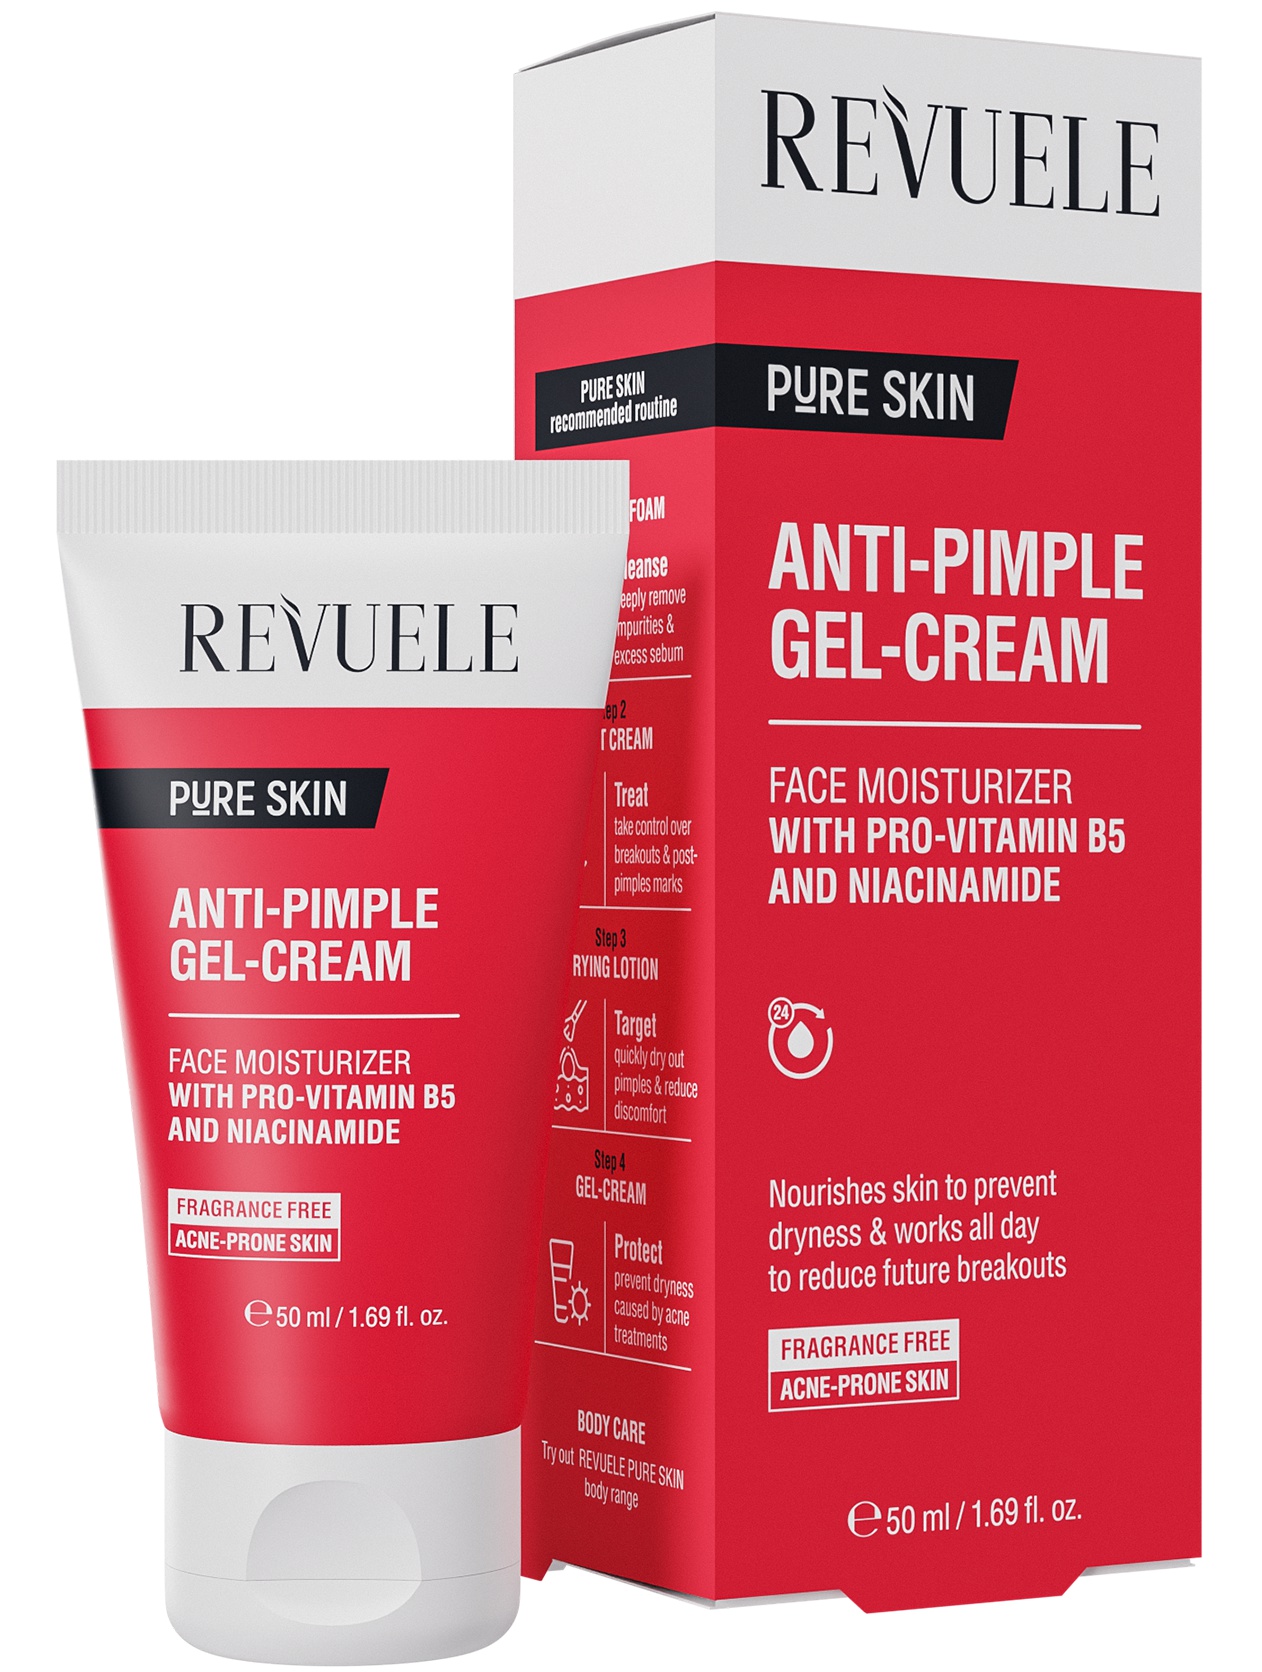 Revuele Pure Skin Anti-Pimple Gel-Cream